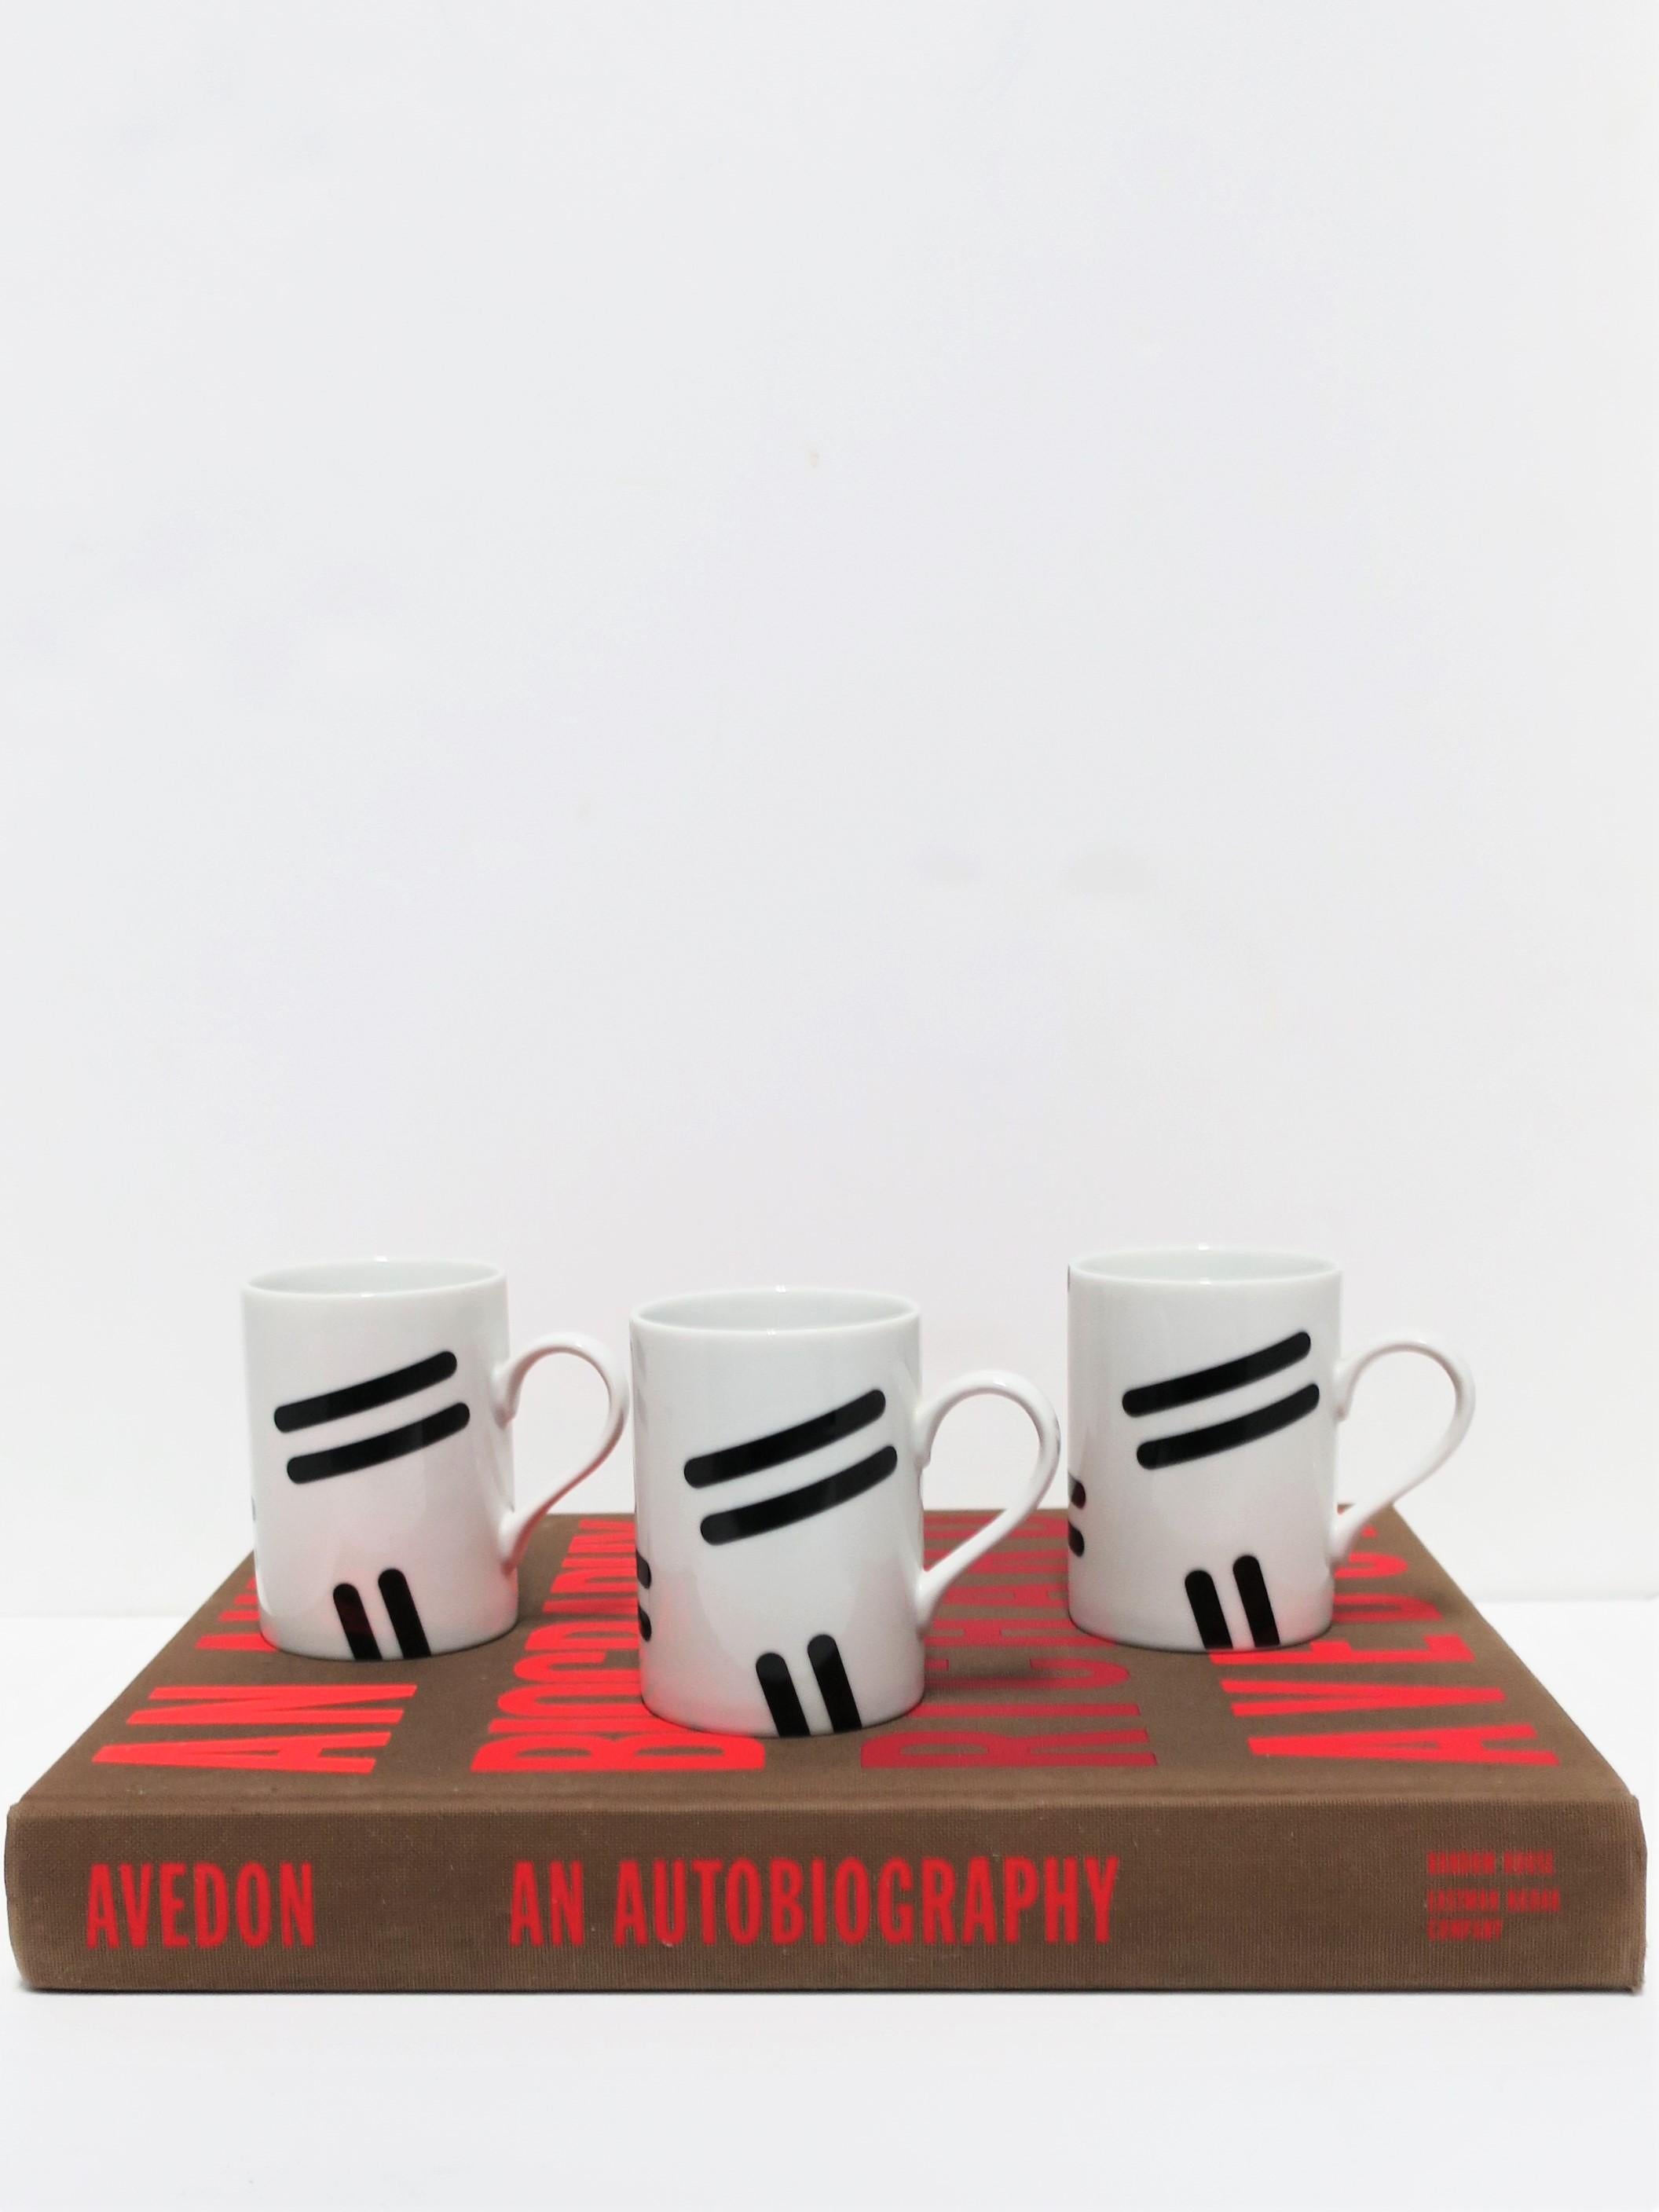 American Postmodern Swid Powell Porcelain Coffee or Tea Cups by Robert Venturi, Set of 3